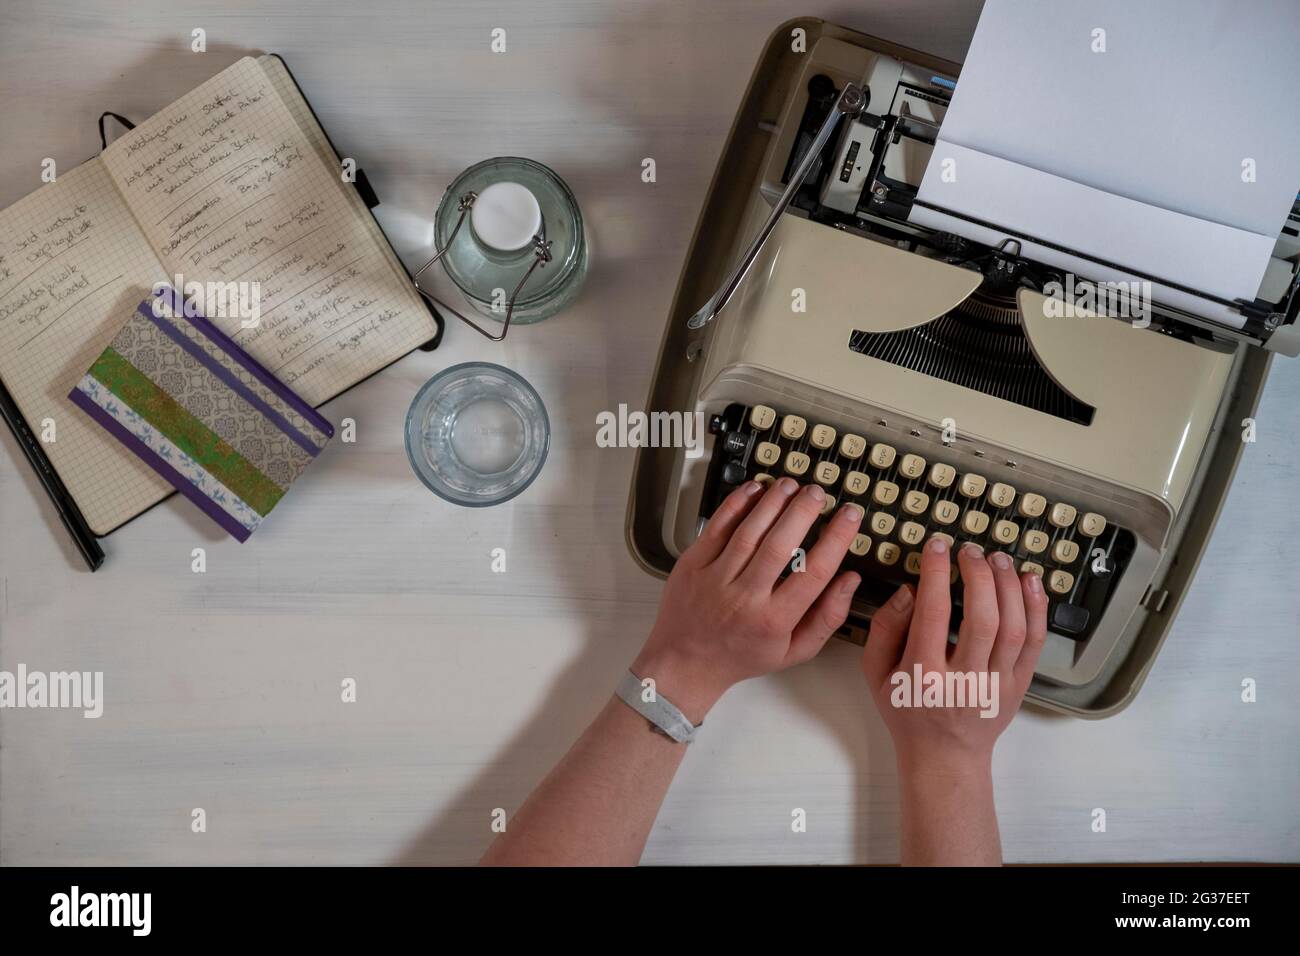 Vieille machine à écrire, machine à écrire de voyage, aigle, blog, photo symbole, Rédaction, auteur, photo de table, Bavière, Allemagne Banque D'Images